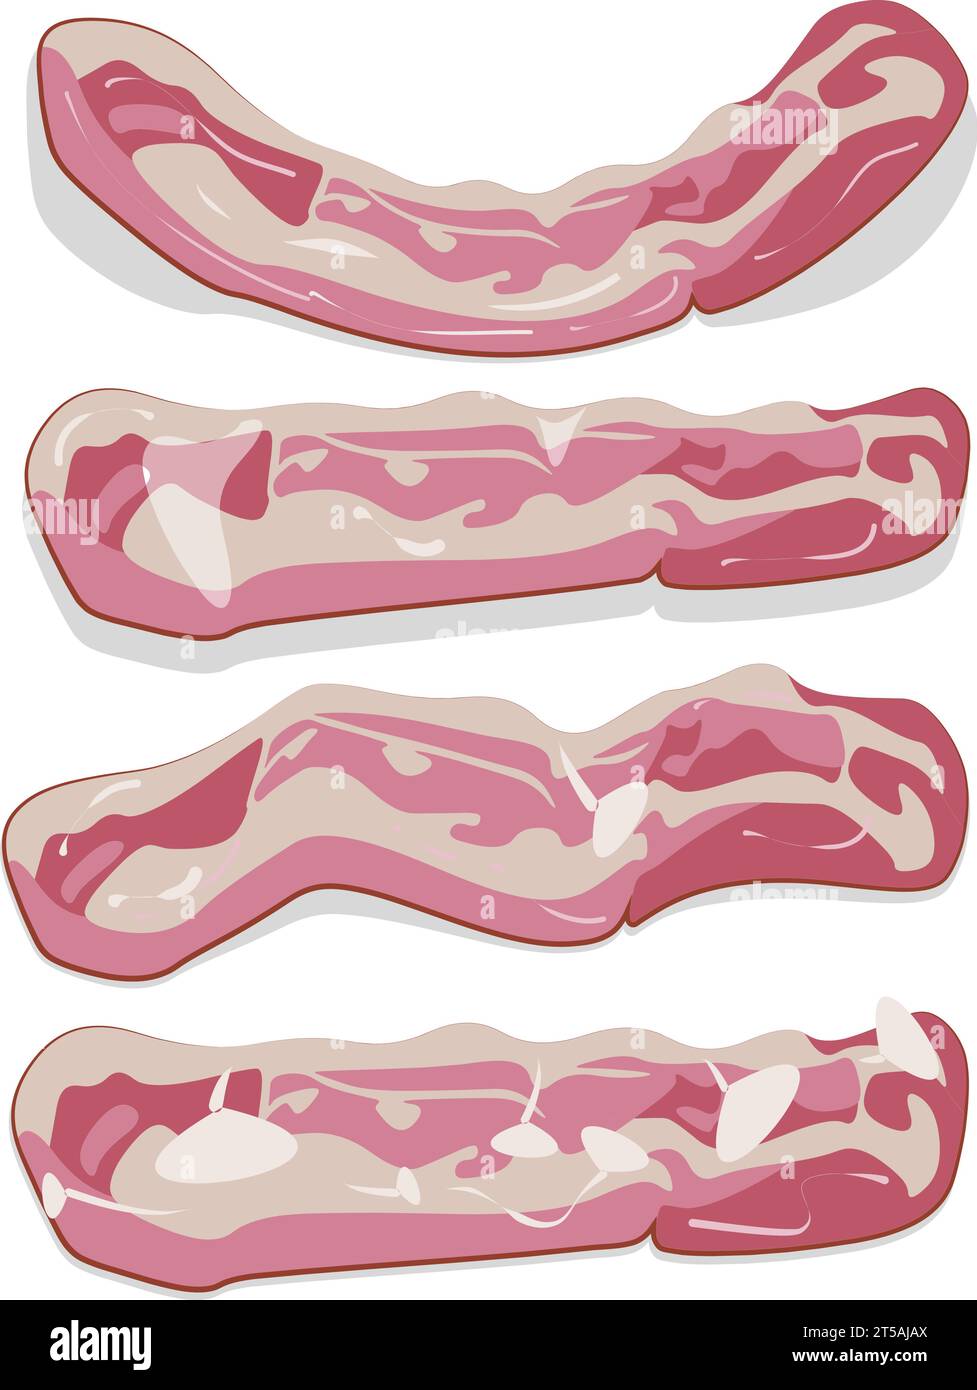 Motif graphique illustré de rangées de bacon fumé en tranches crues plates et striées Illustration de Vecteur